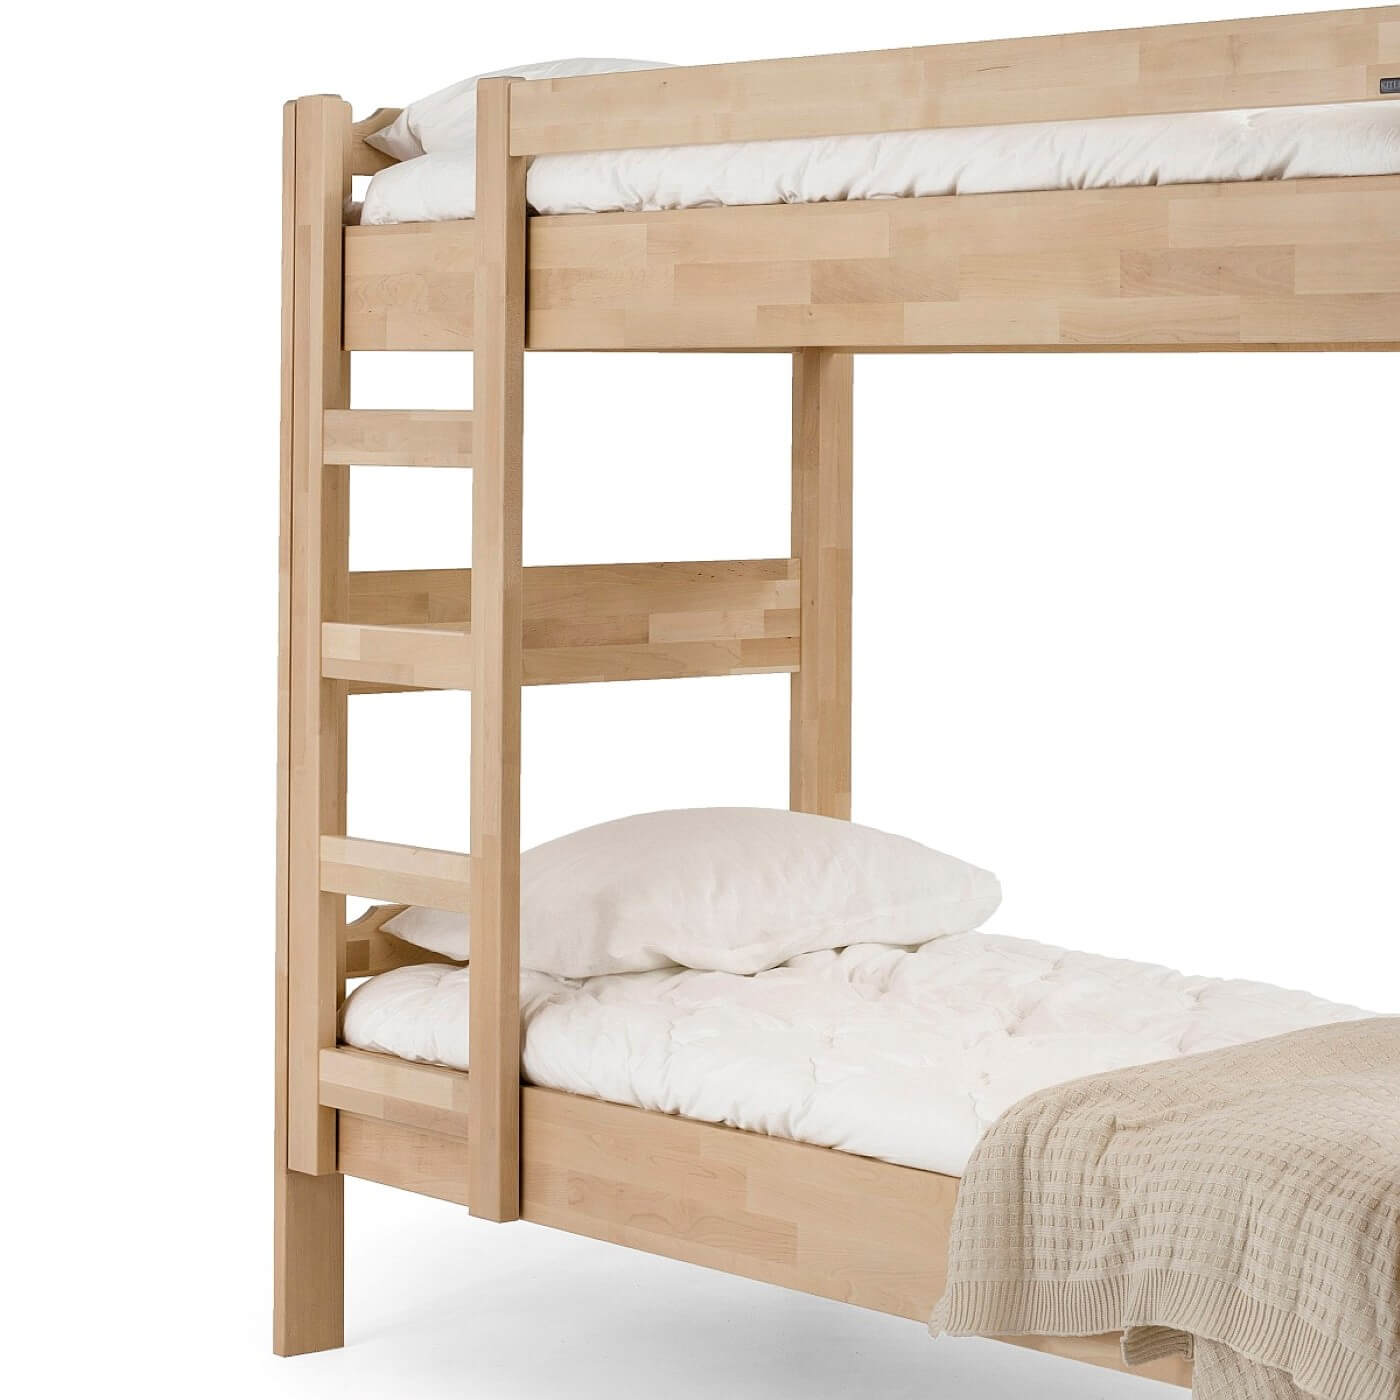 Łóżko piętrowe drewniane KUUSAMO. Fragment łóżka dwupiętrowego z drabinką ze szczeblami z jasnego drewna brzozy skandynawskiej. Widoczne materace, biała pościel i beżowy koc. Skandynawski design